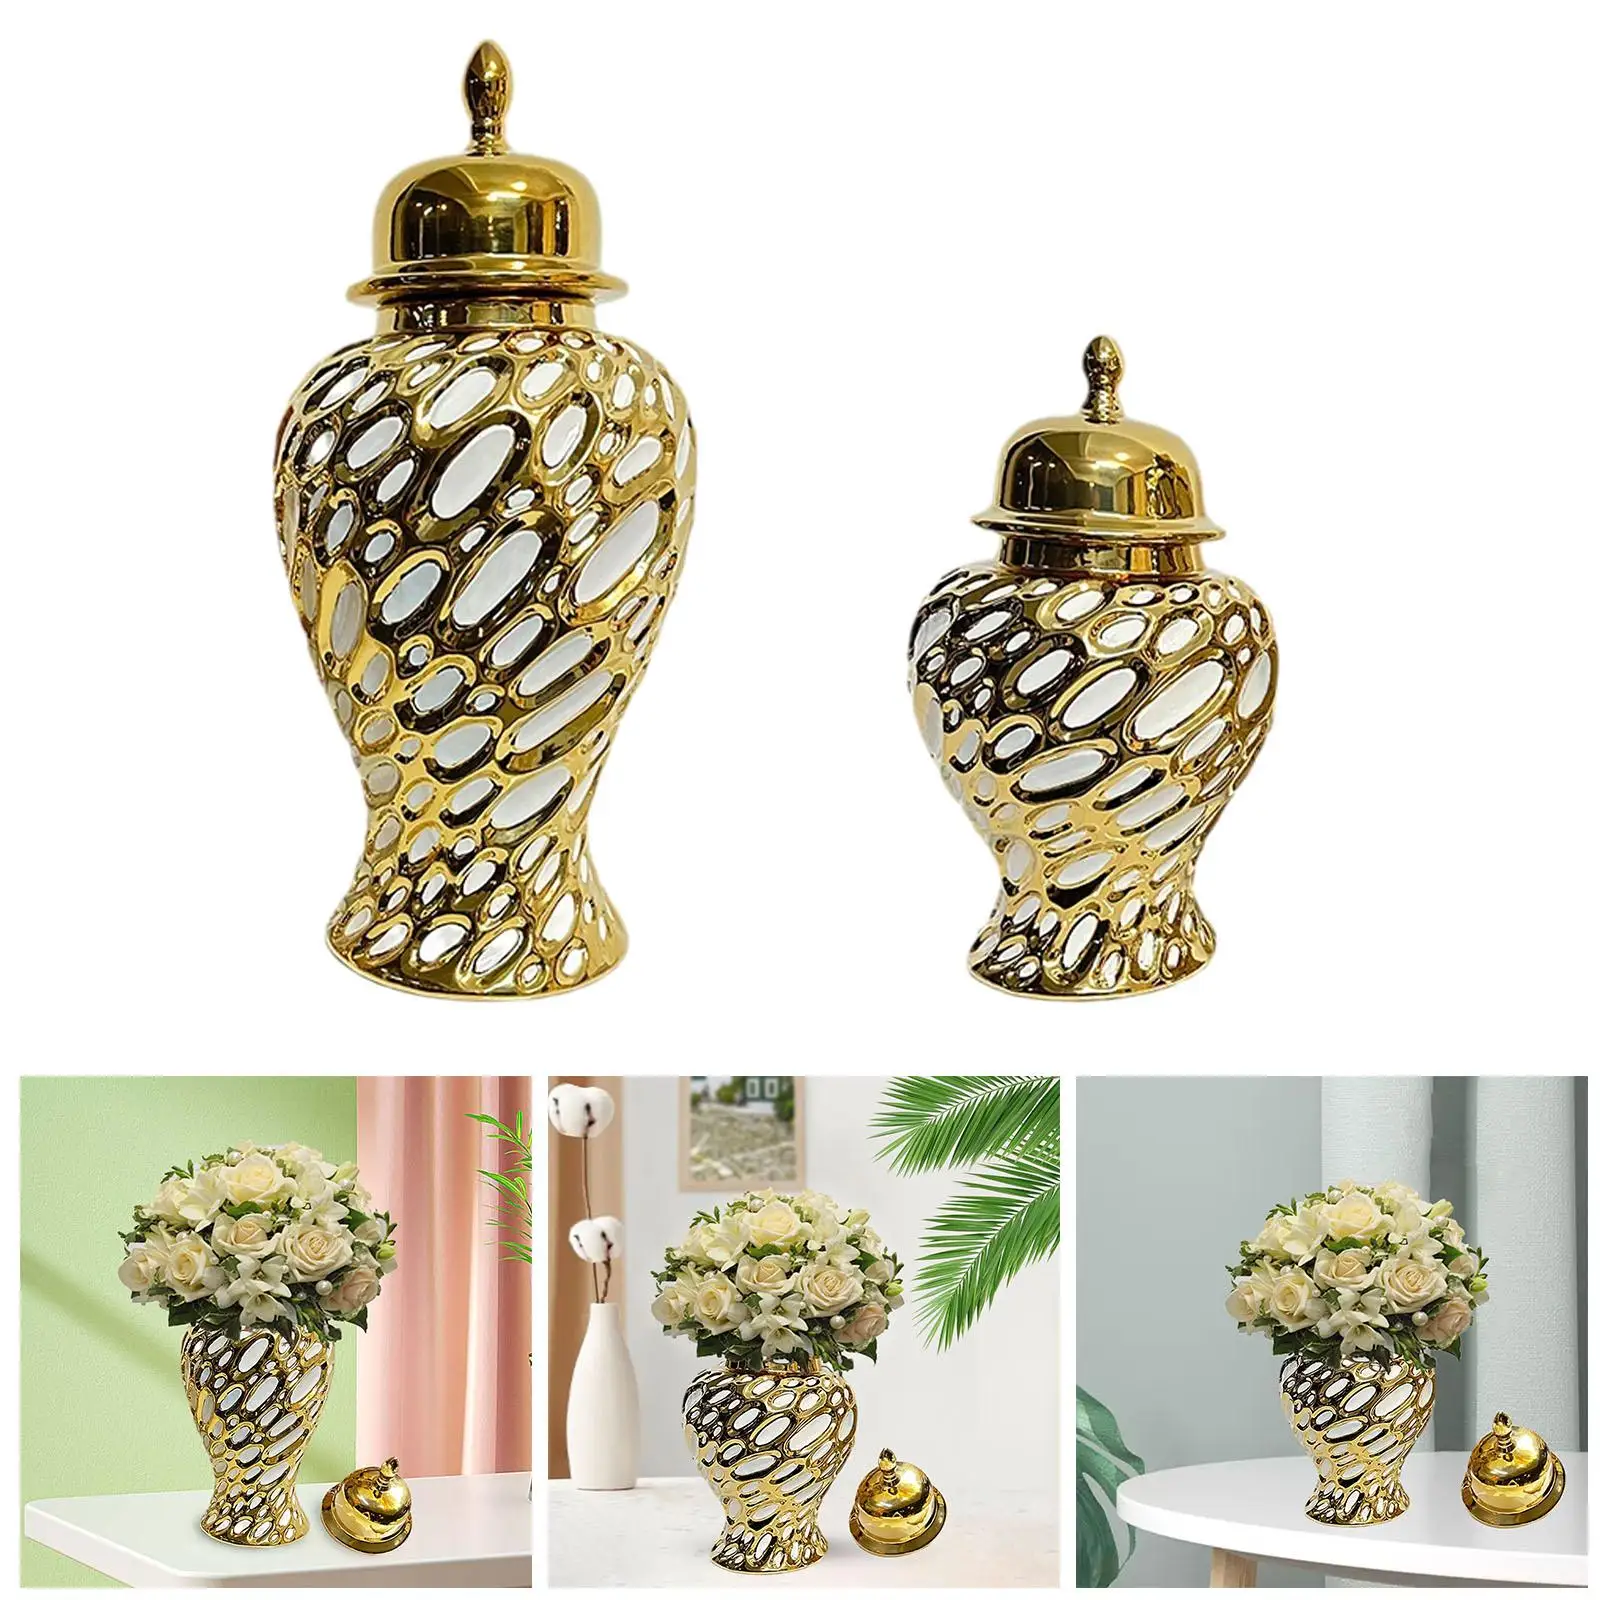 Porcelain Ginger Jar Handicraft with Lid Ceramic Flower Vase Storage Jar for Living Room Office Party Bedroom Home Decoration